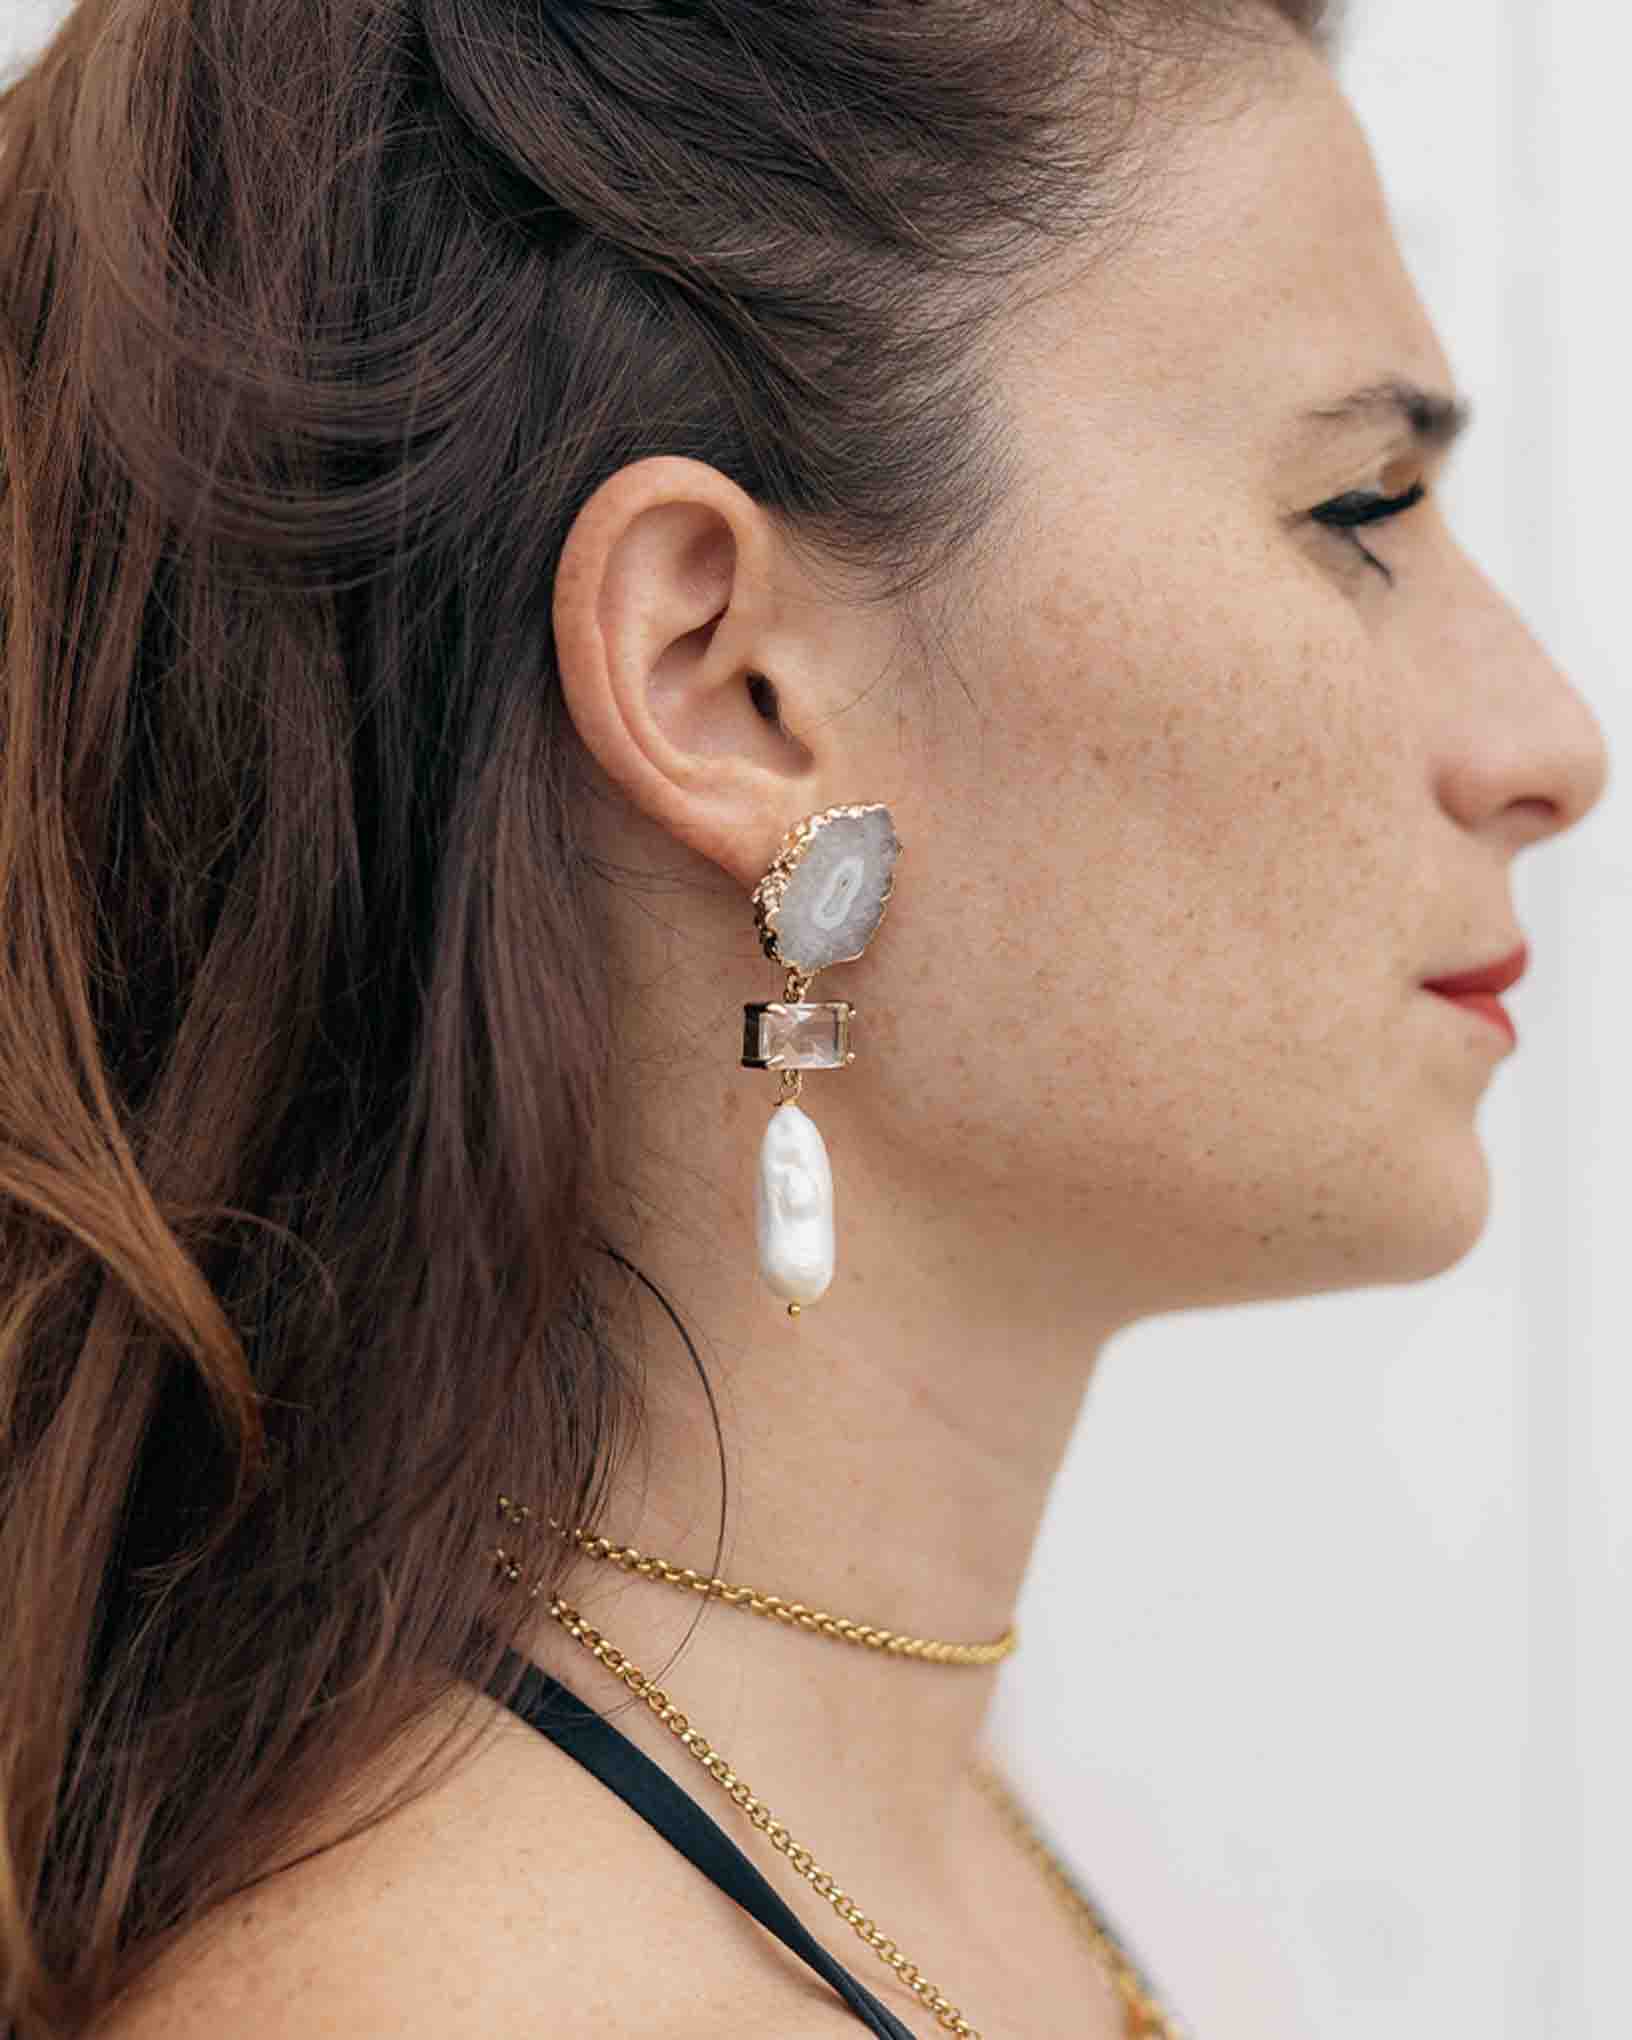 Ohrring Venere aus der Kollektion Galassia von Donna Rachele Jewelry